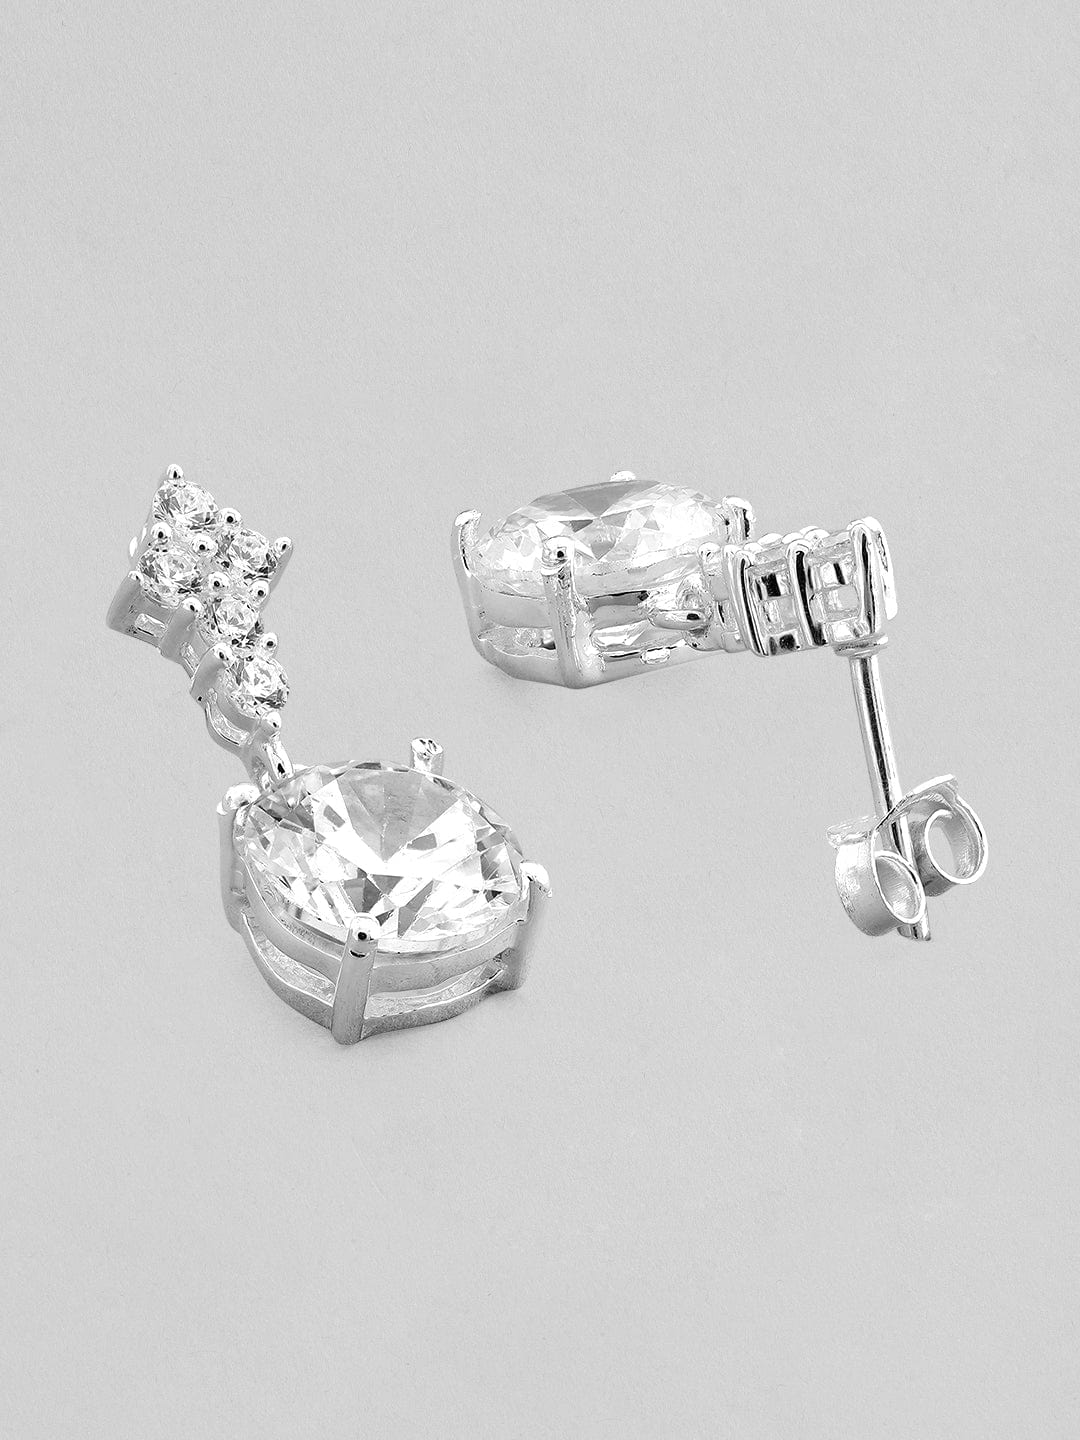 Rubans 925 Silver The Celestial Proximity Drop Earrings. Earrings